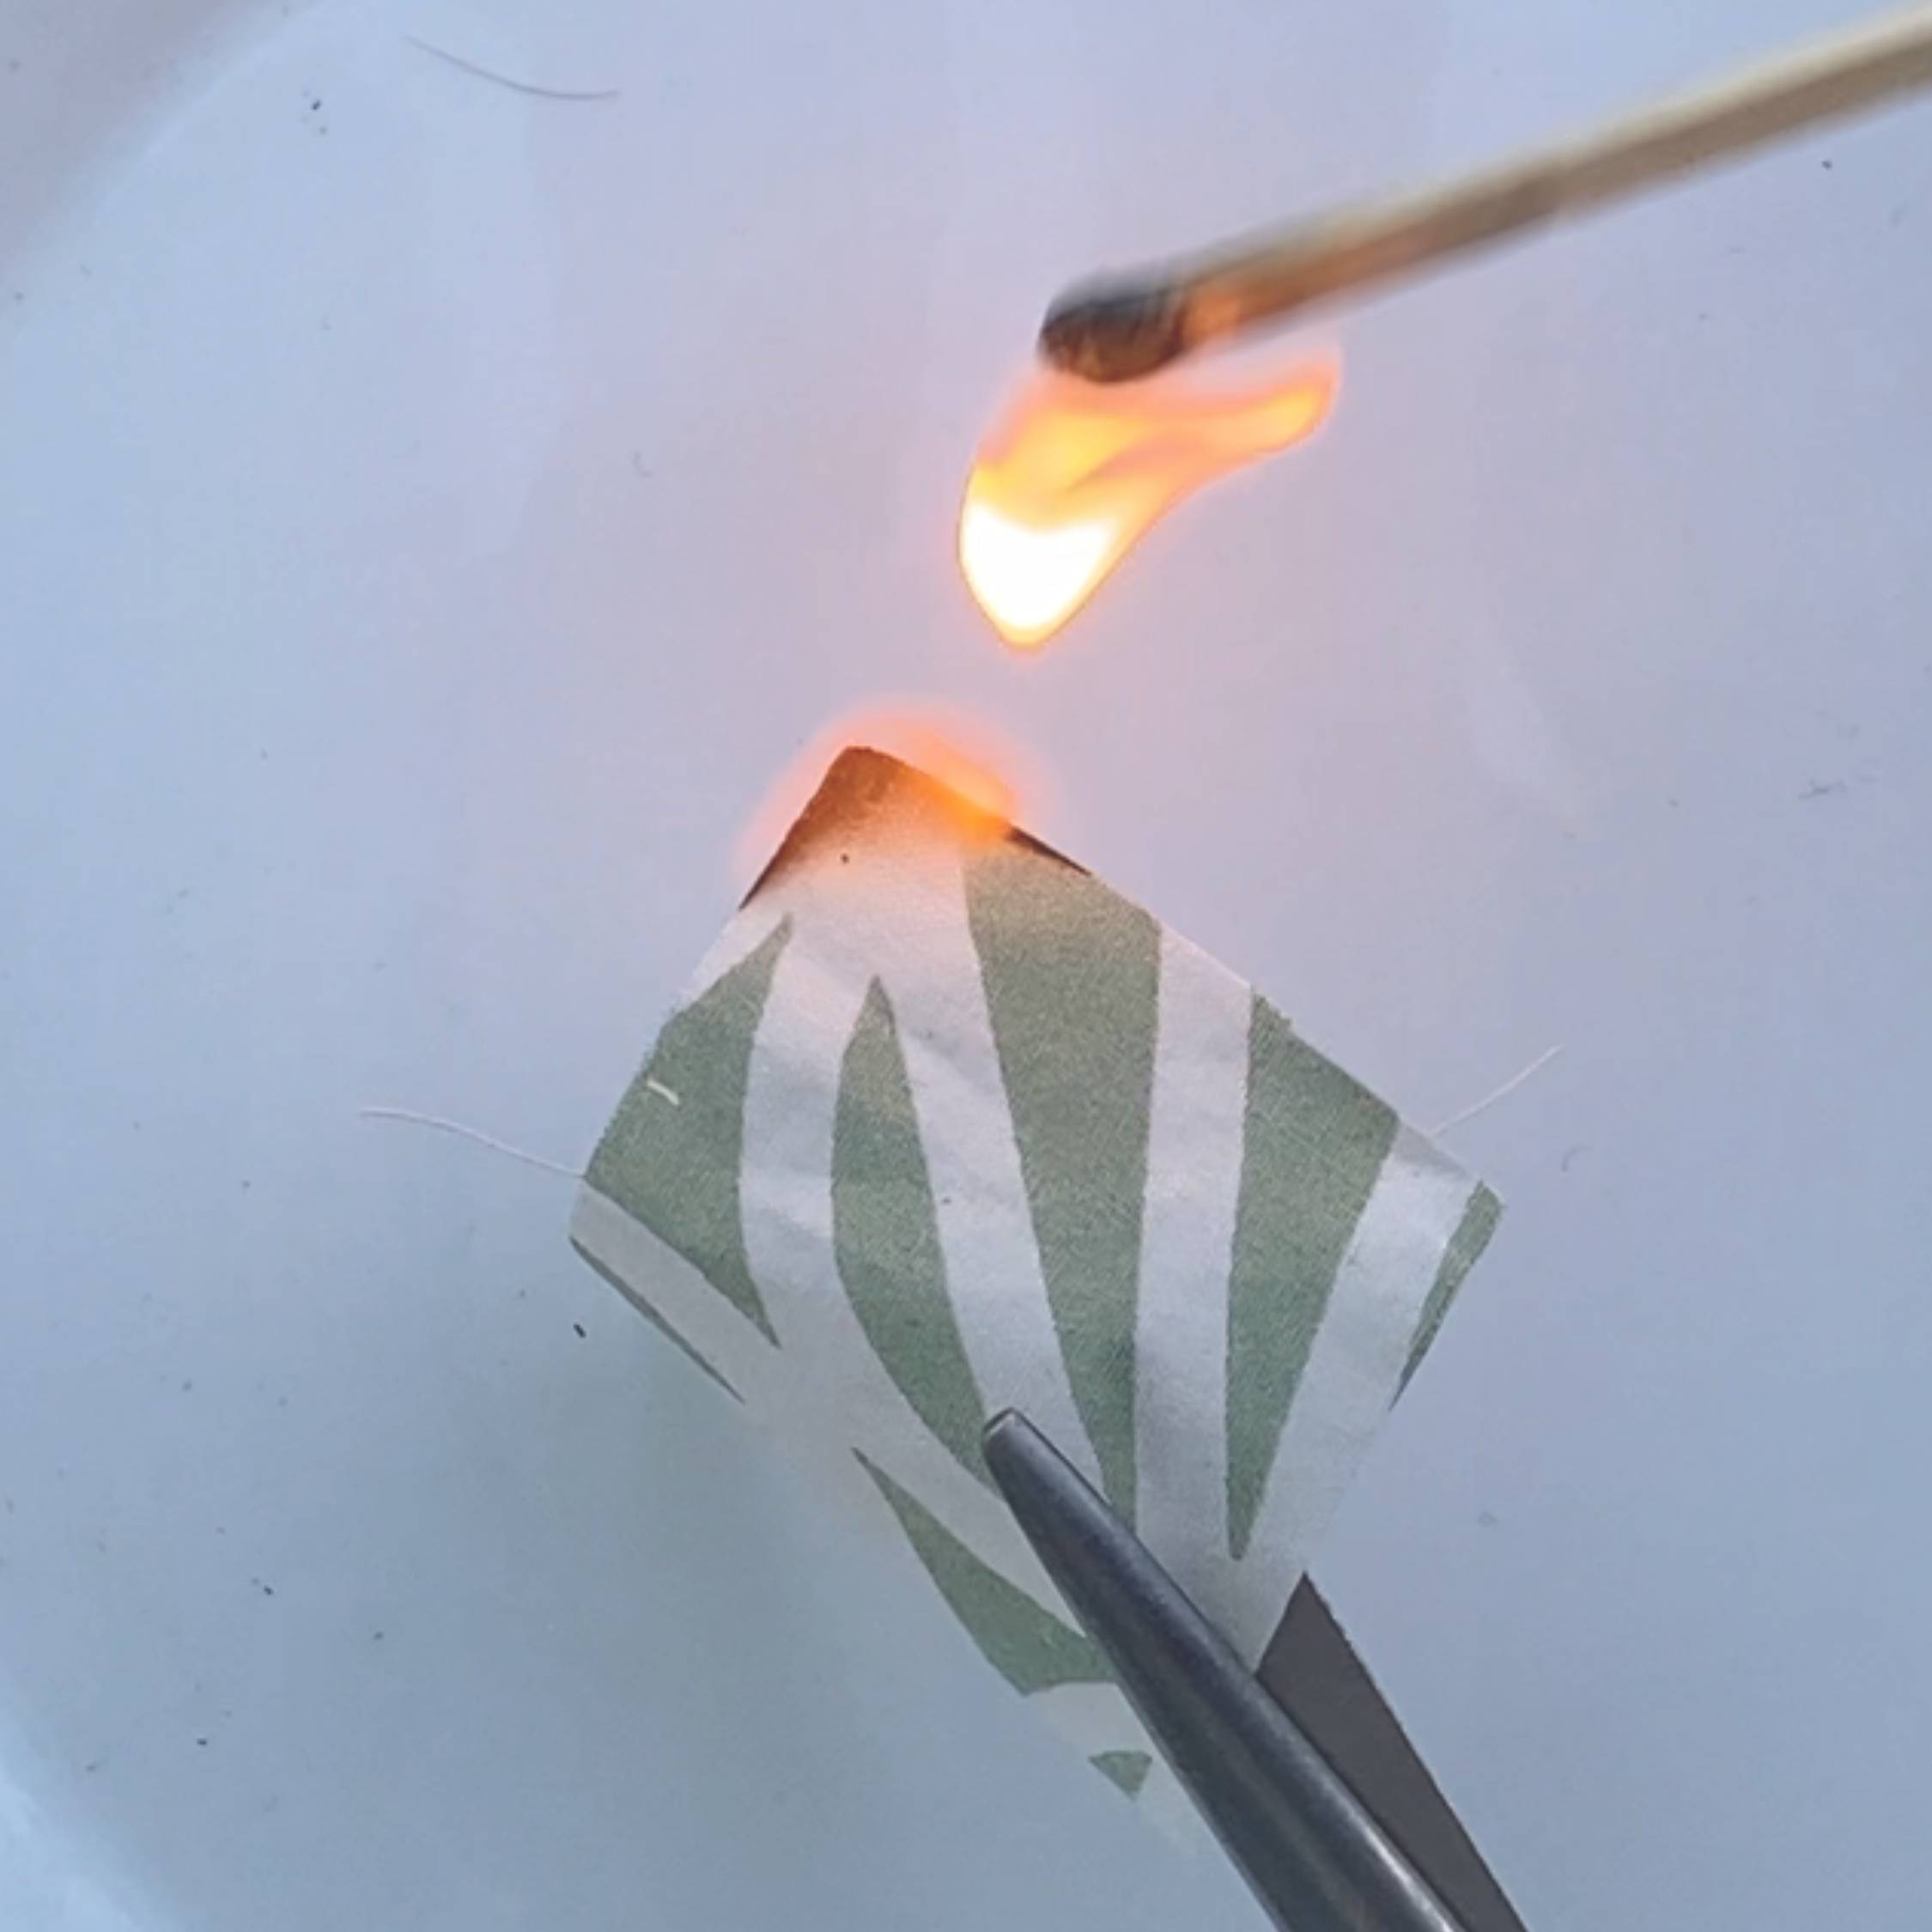 Le test de combustion pour identifier les fibres d’un tissu